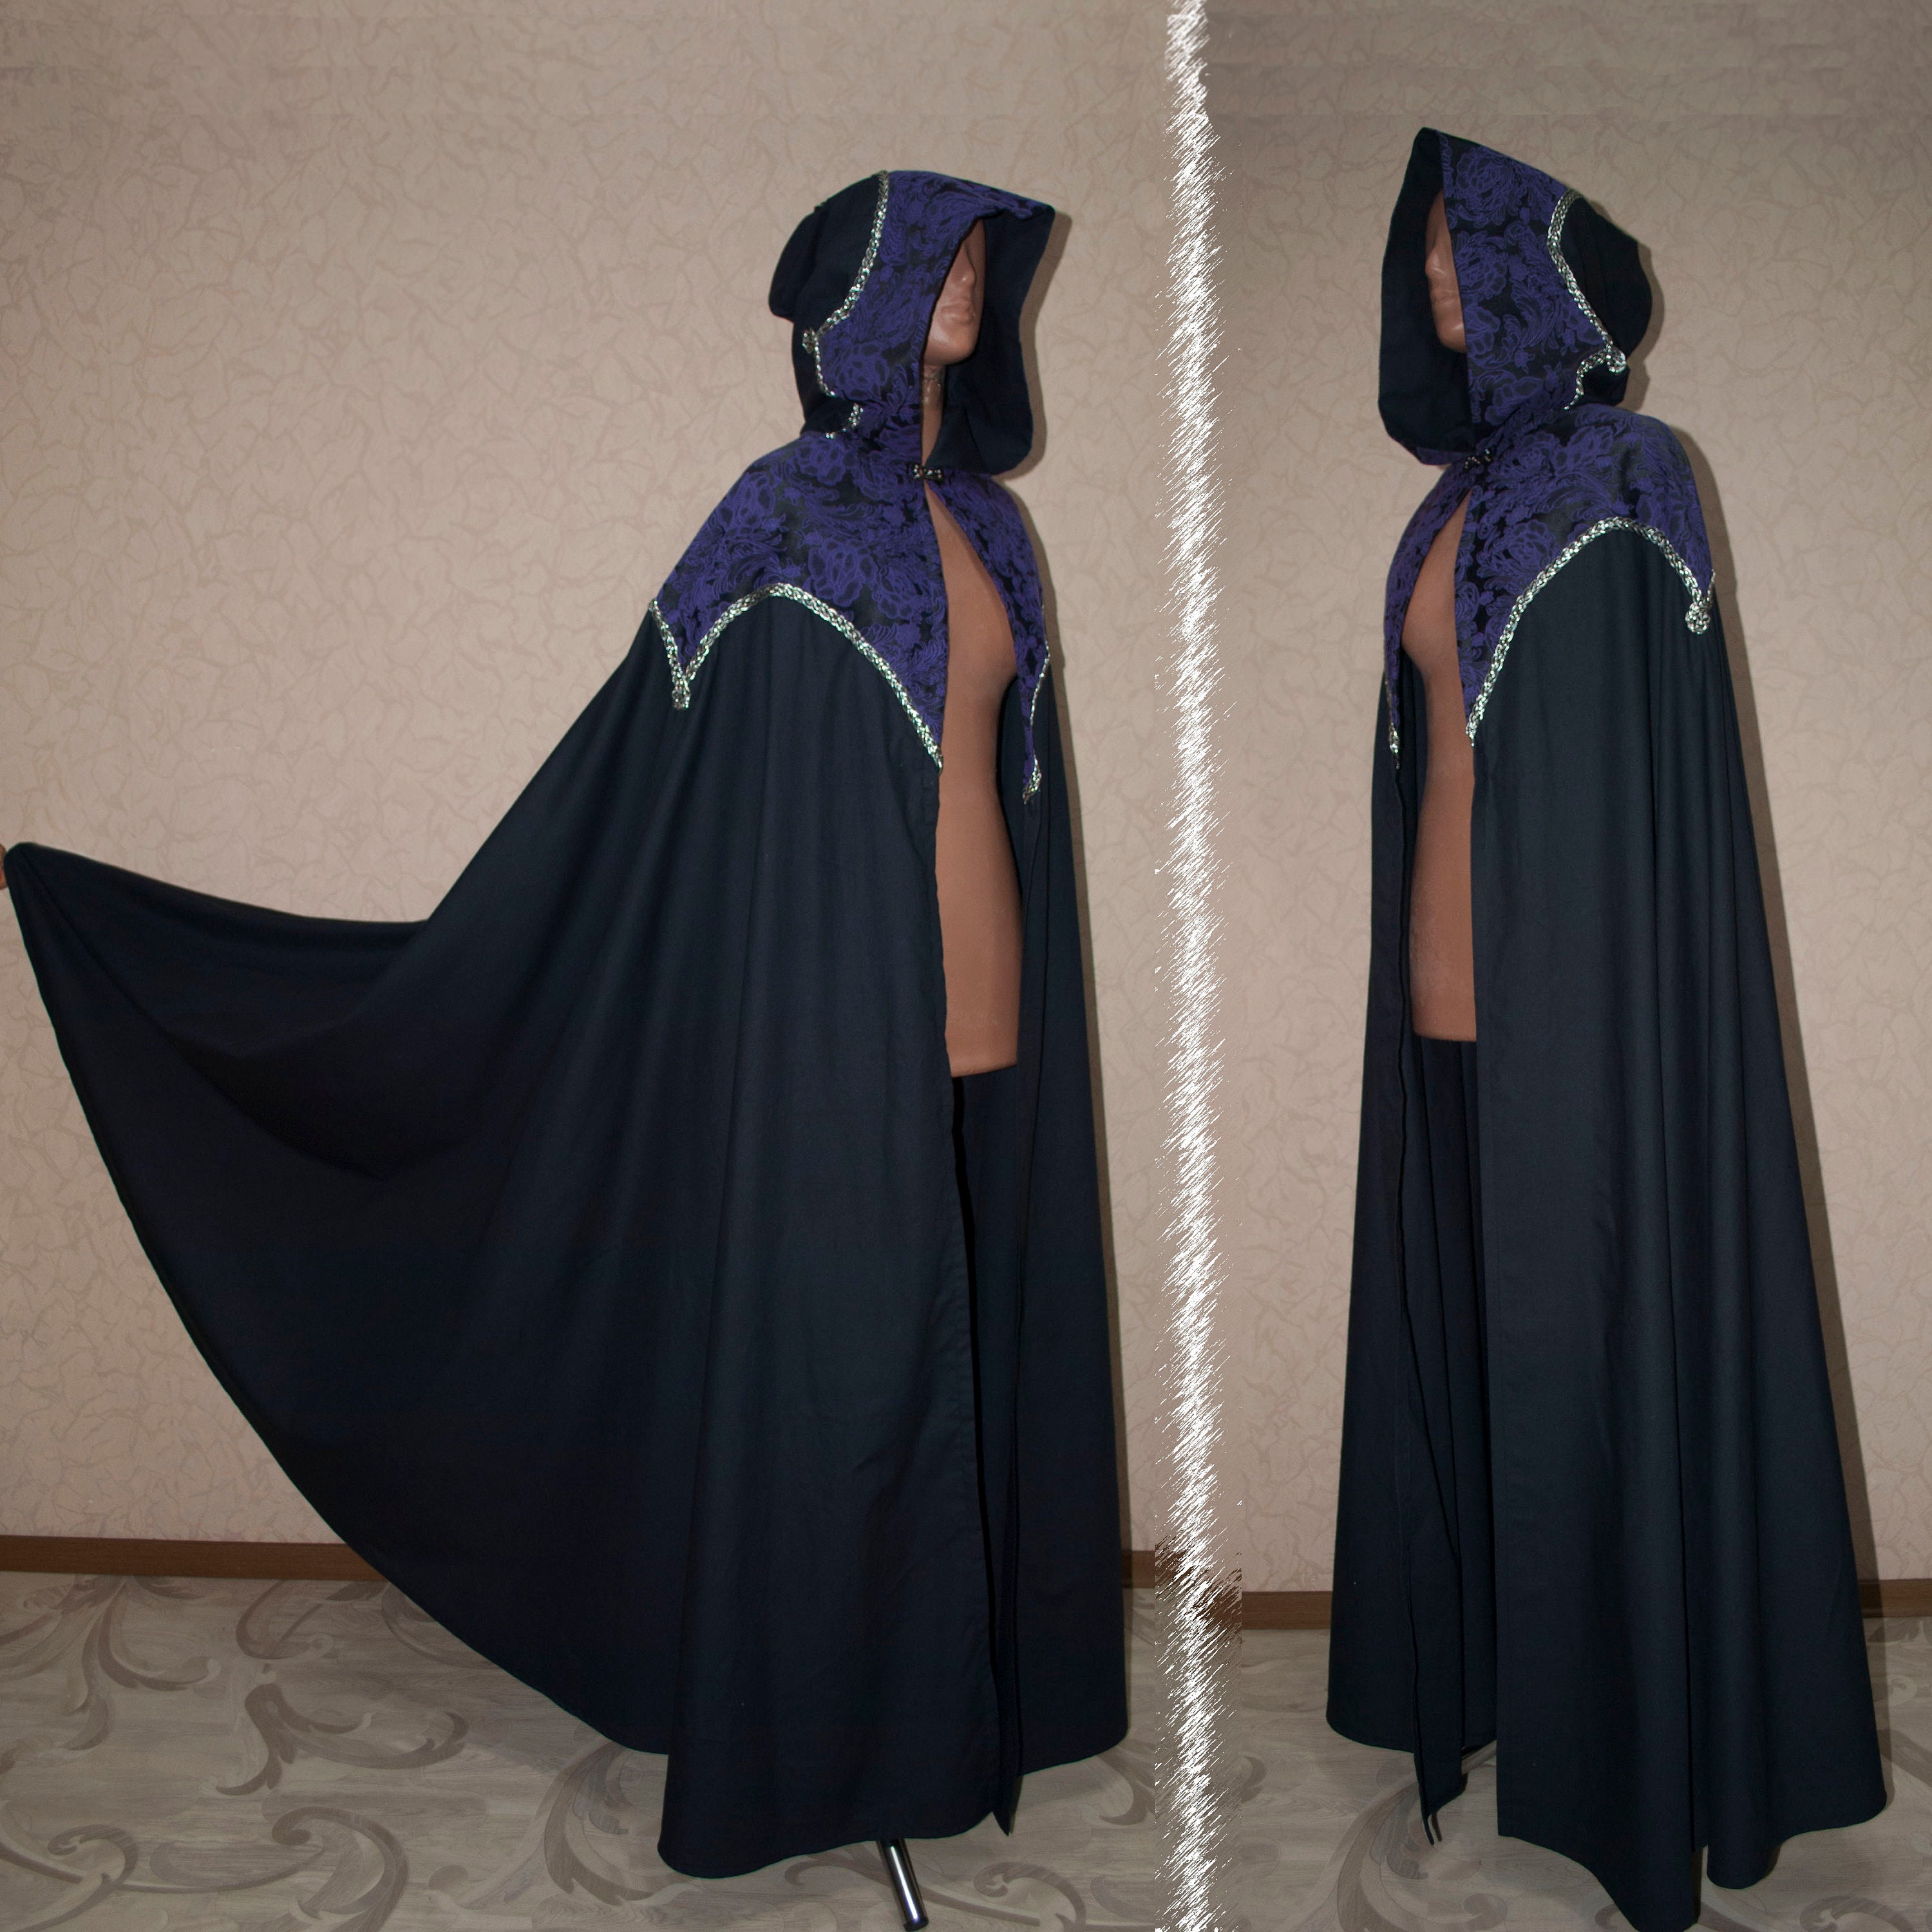 Hooded Wool Short Cape Alternative Fantasy Wear Cloak /P/ 